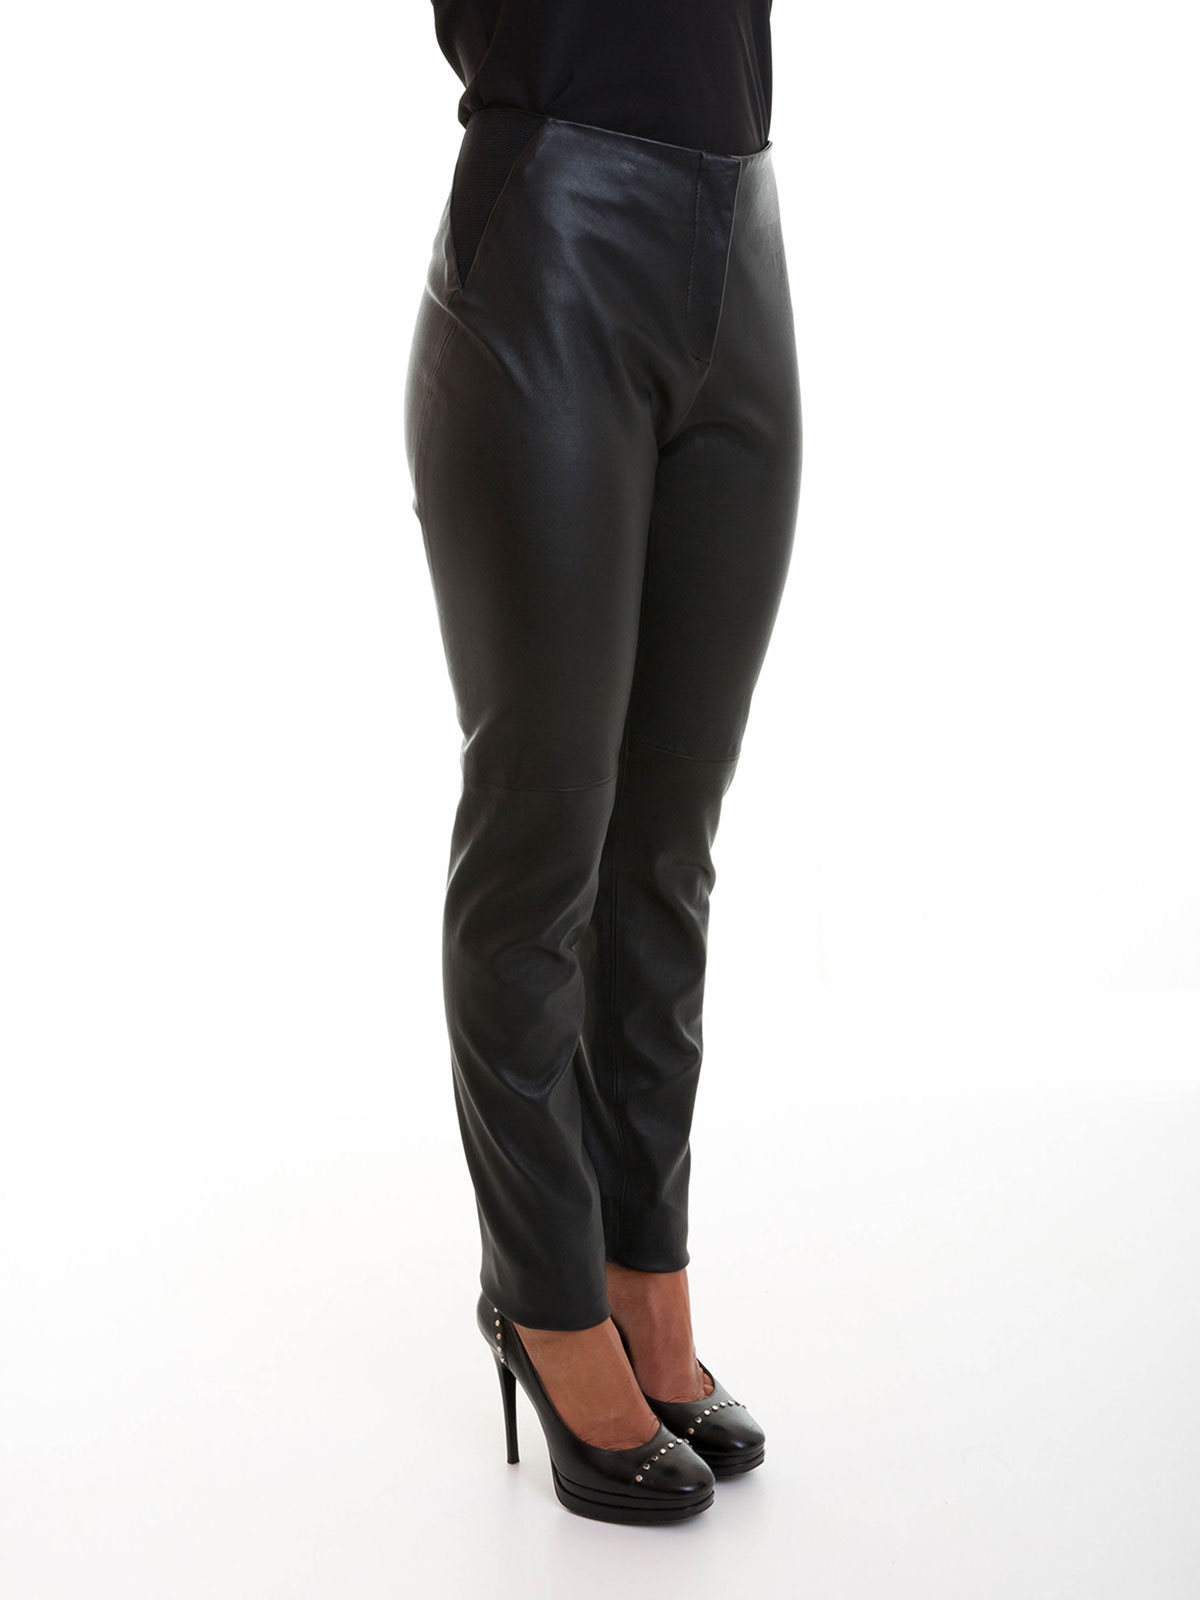 Armani Leather Pants Clearance  wwwvsvidyalayain 1691520888